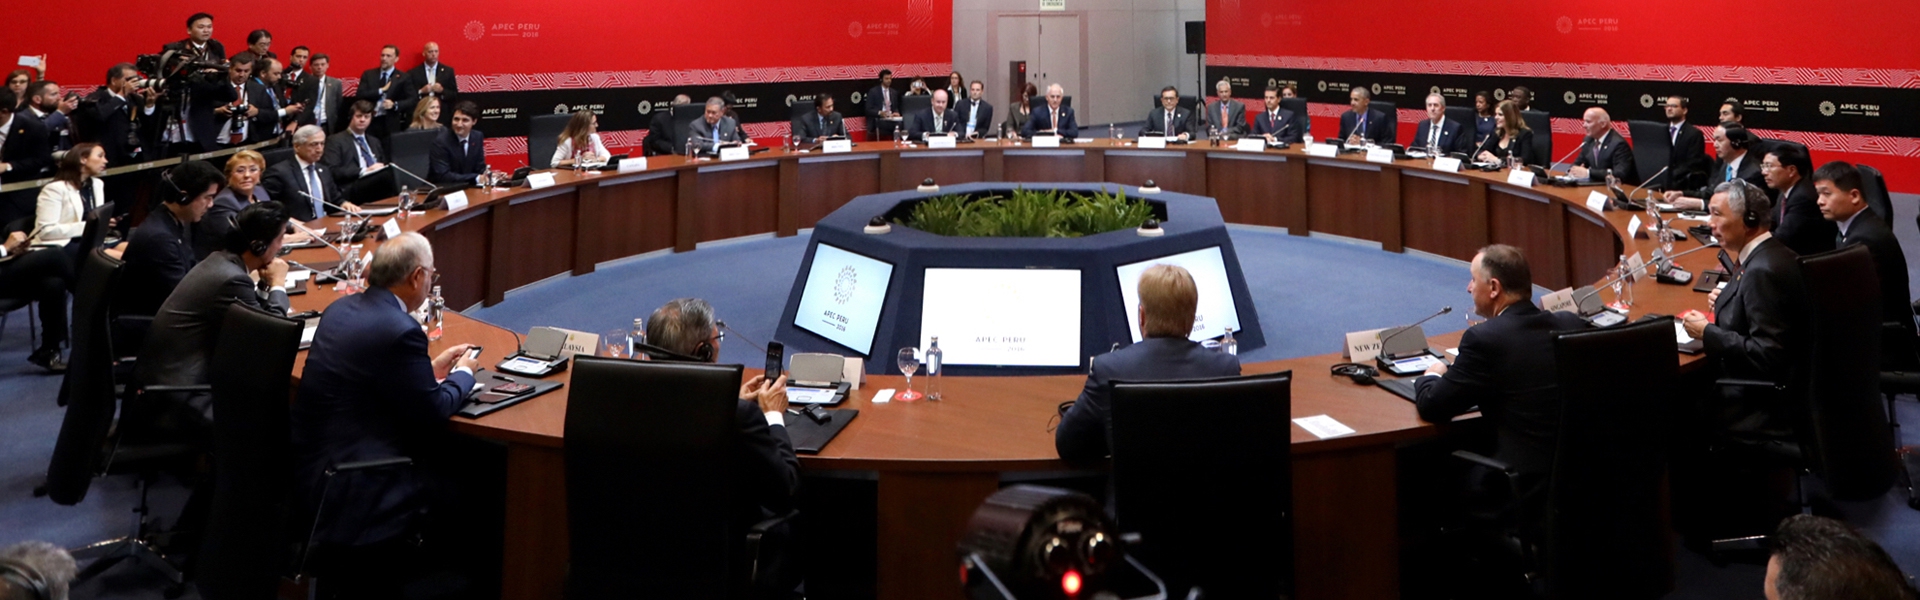 Le premier ministre Justin Trudeau participe à la Réunion des dirigeants de l’APEC à Lima au Pérou